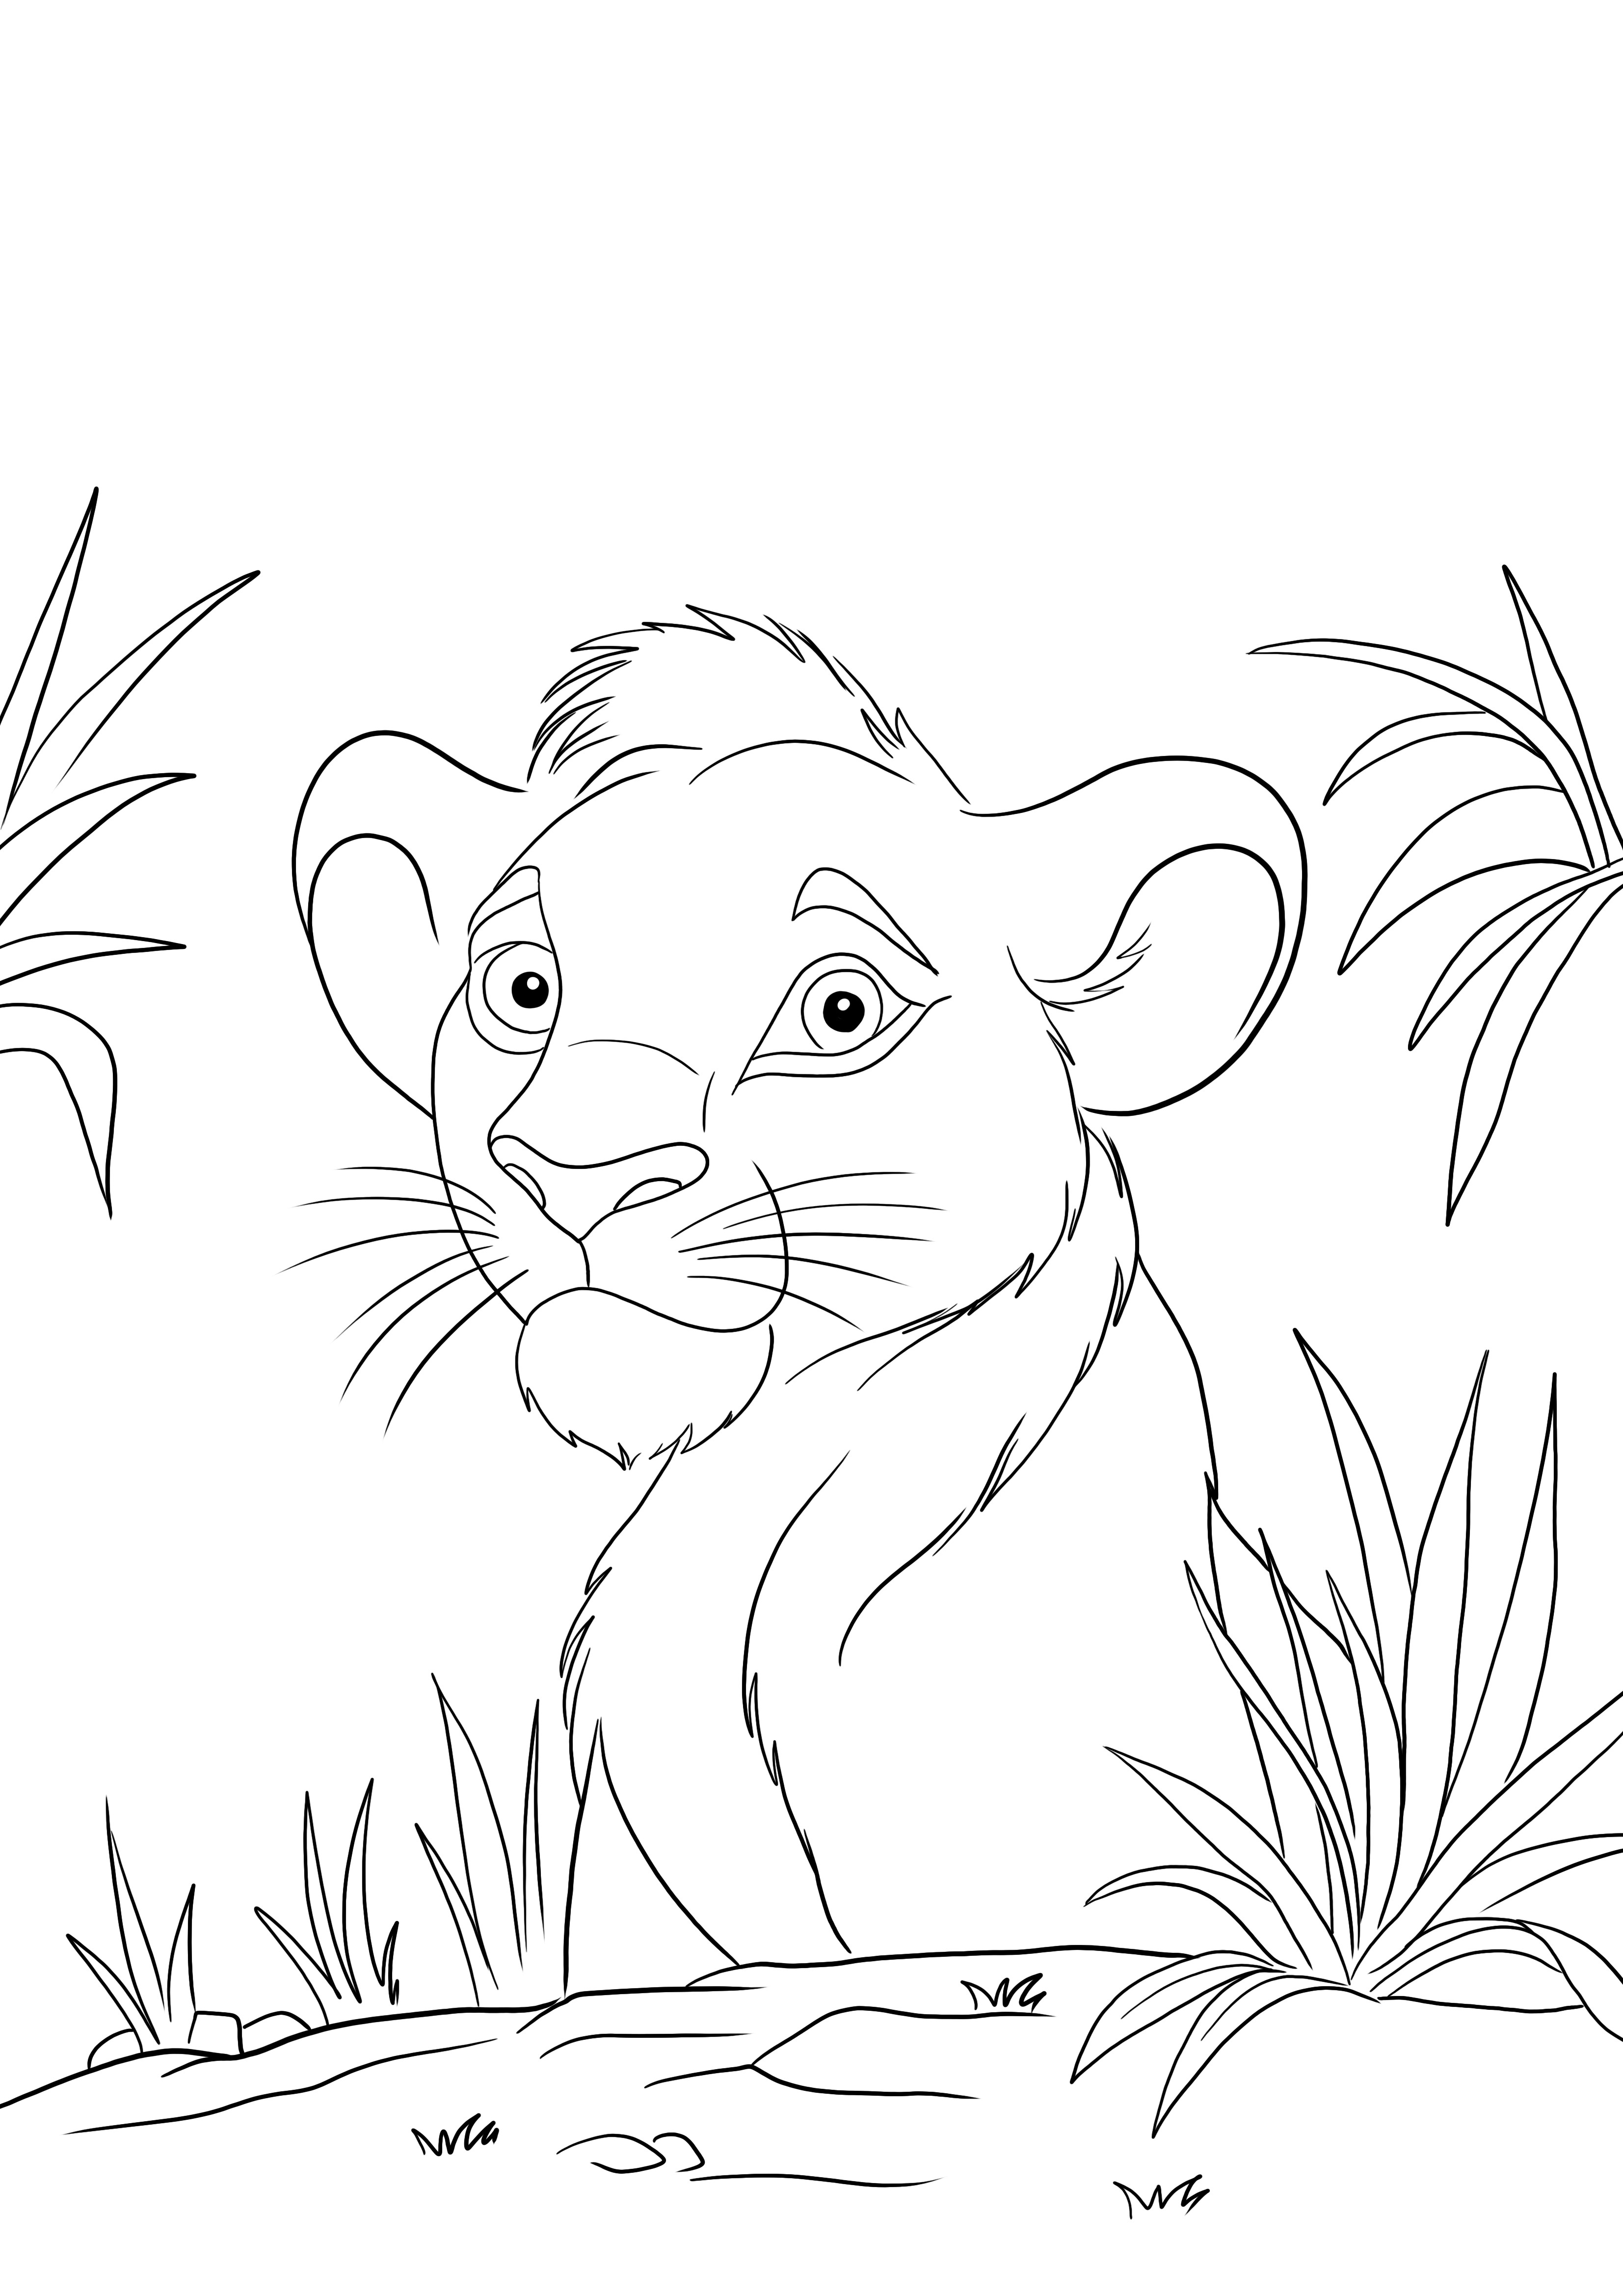 Simba dari Lion's King pewarnaan yang mudah dan lembar cetak gratis